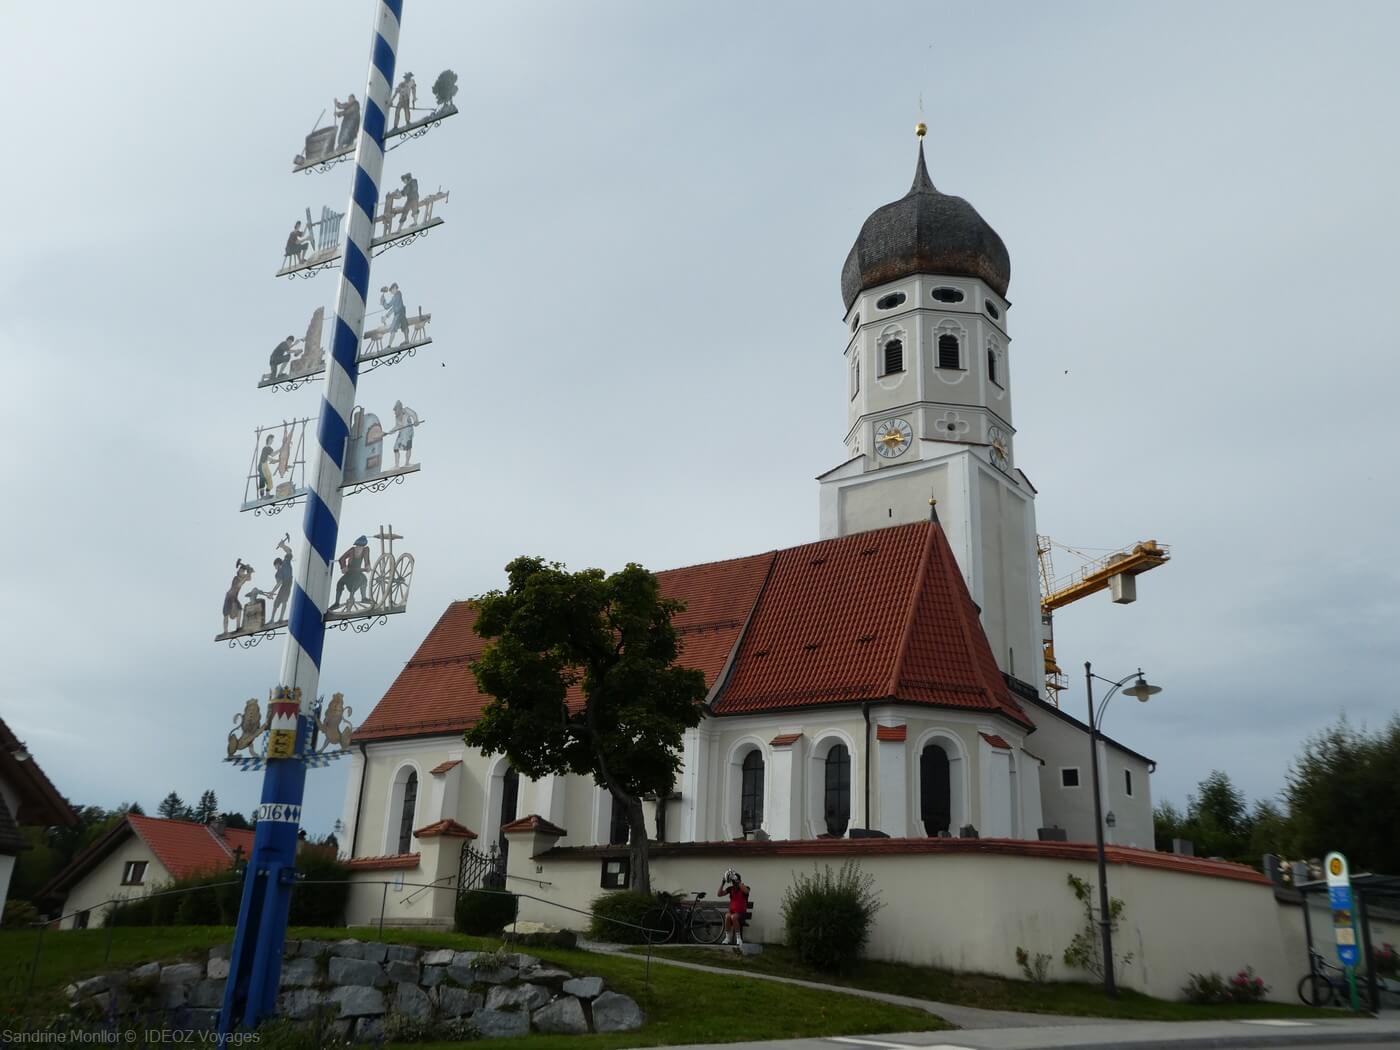 église d'andechs et arbre de mai en haute bavière près de munich